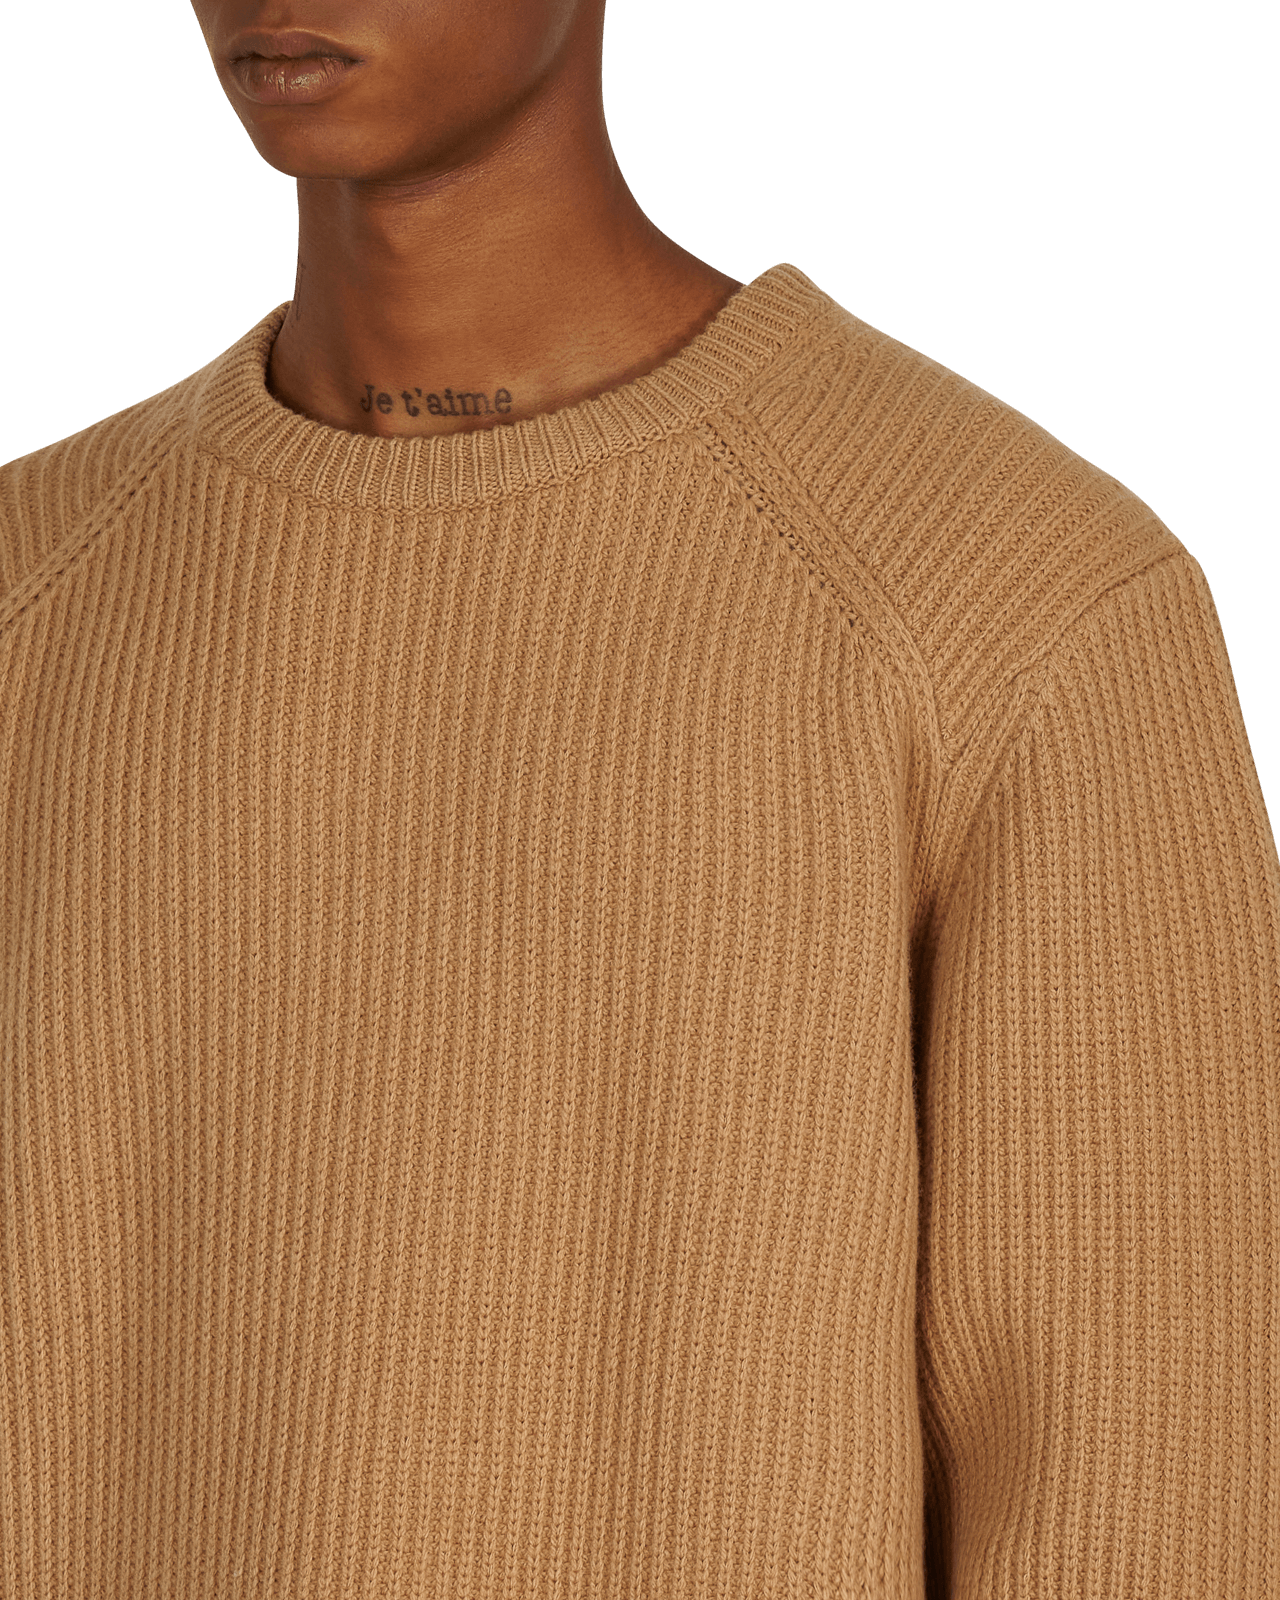 Dries Van Noten Task 3702 Camel Knitwears Sweaters 212-021238-3702 102